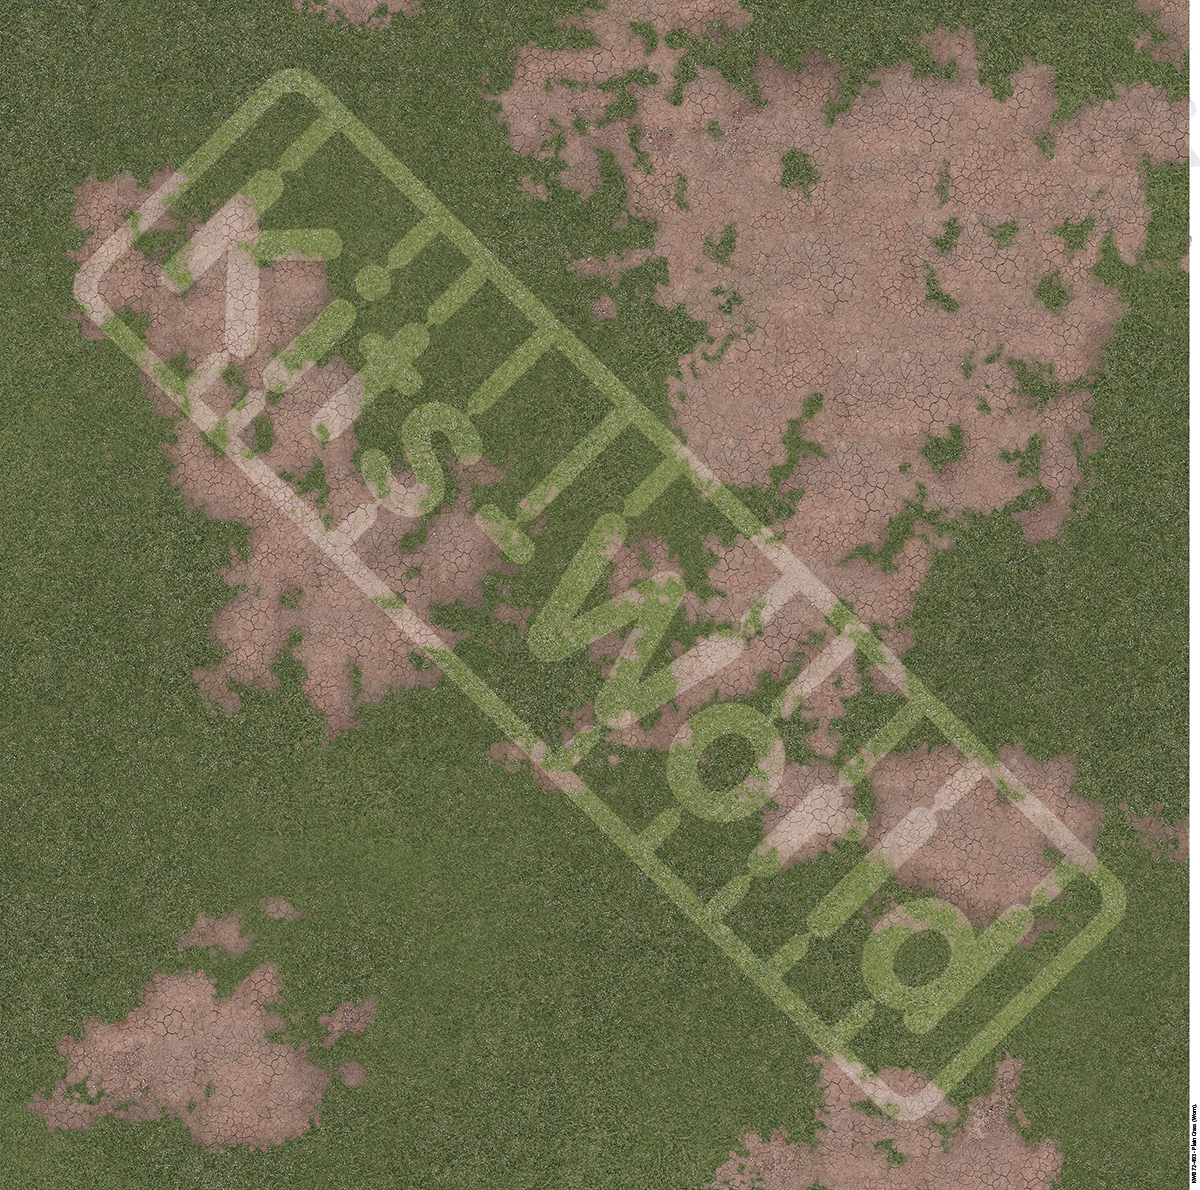 Kitsworld Diorama Adhesive Base 1:72nd scale - Plain Grass- Worn KWB 72-493 Plain Grass- Worn 